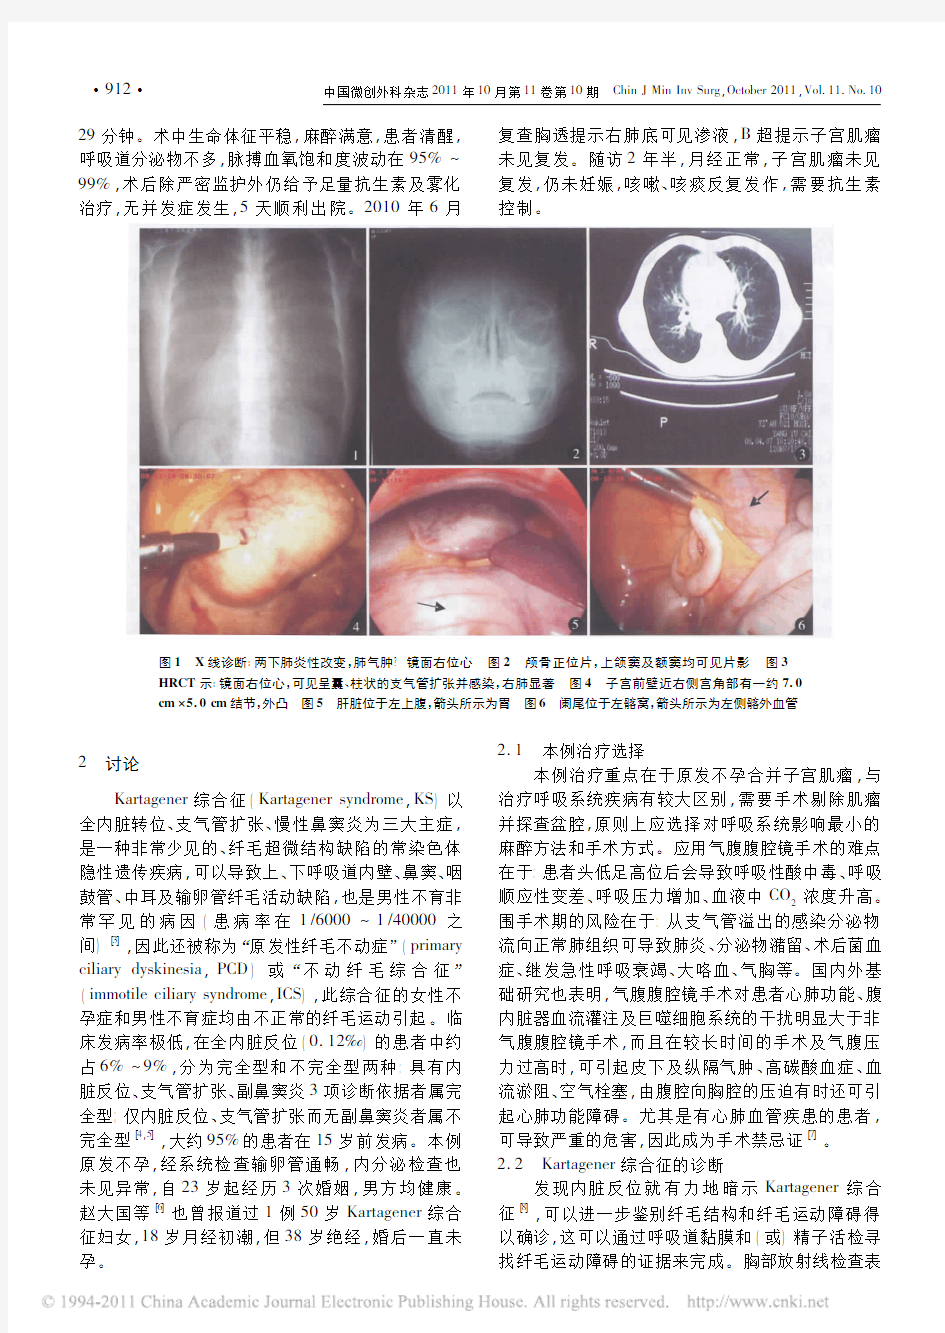 合并Kartagener综合征的非气腹腹腔镜子宫肌瘤剔除术1例及文献复习(2011)中国微创外科杂志(核心)